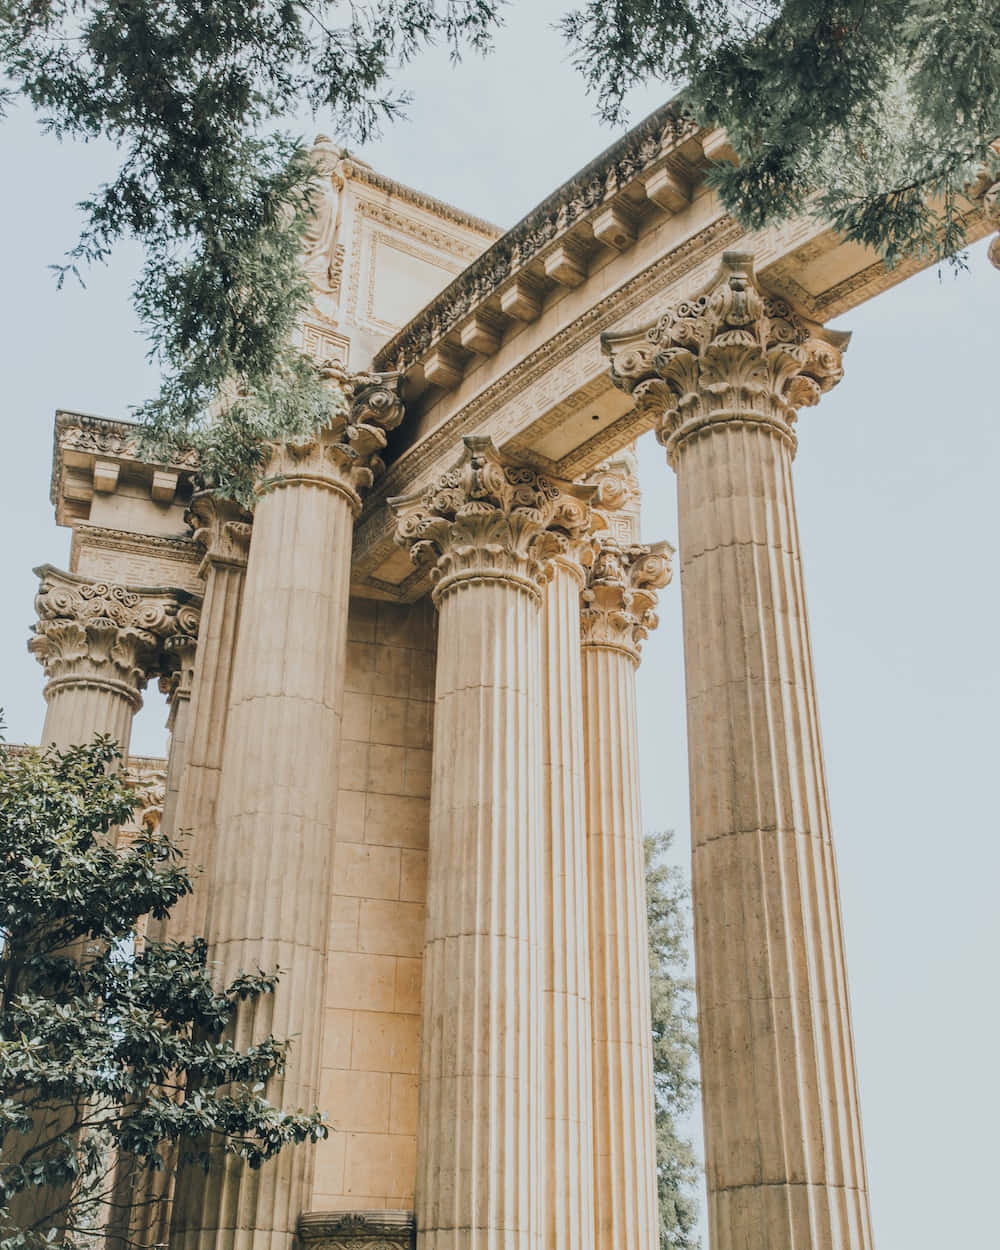 Discover a hidden splendor in the magic of Greece.